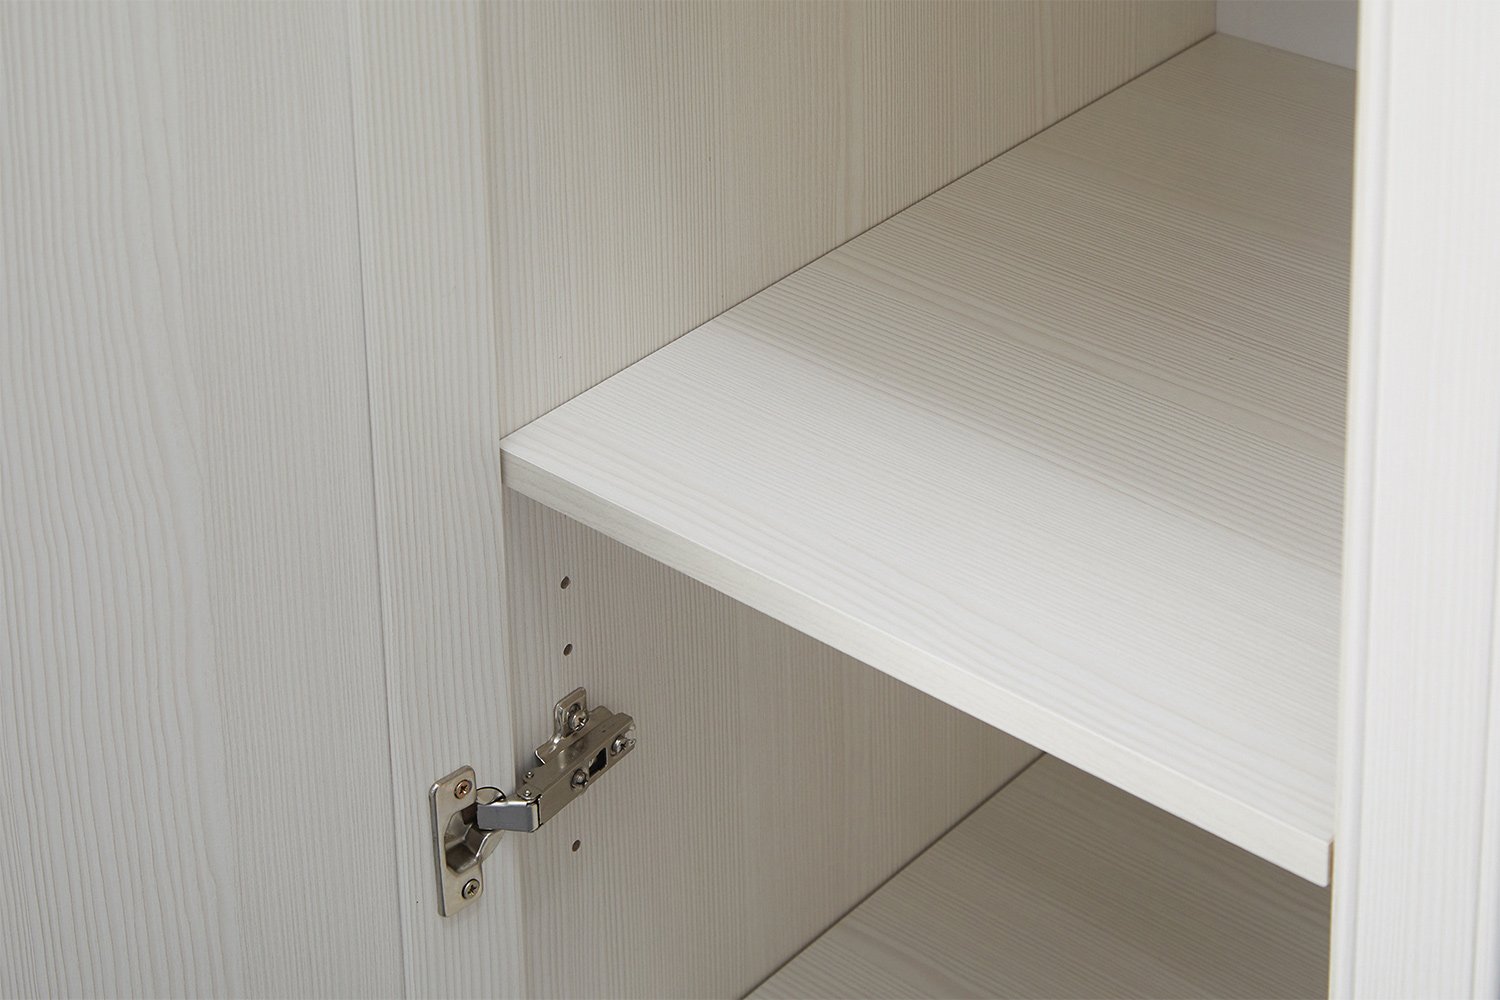 Шкаф для одежды 4-дверный Ника-Люкс 160,2х205,6х54,6 см, бодега белая